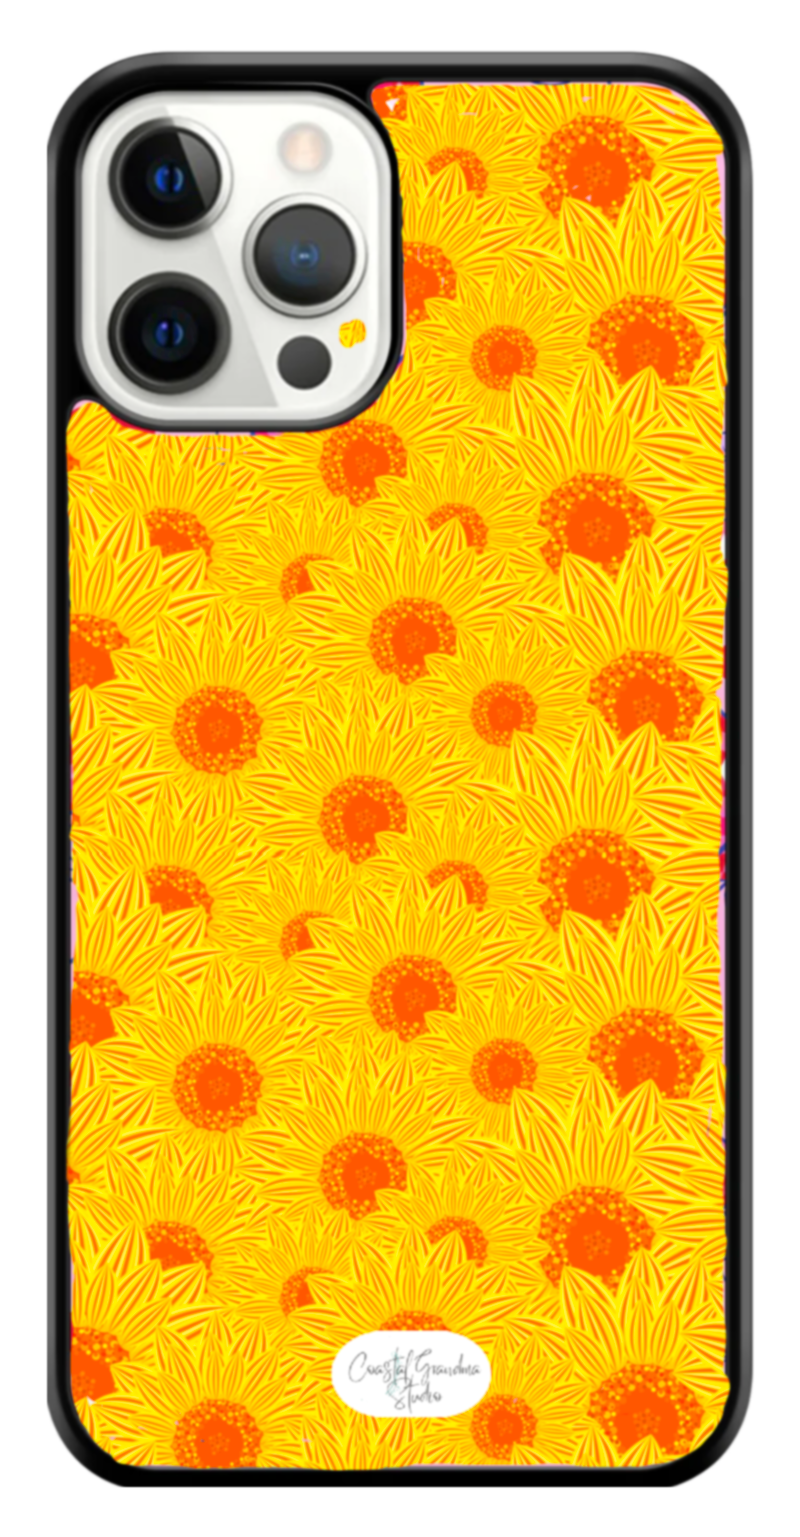 Cheery Sunflowers! Coaster (1430-C)